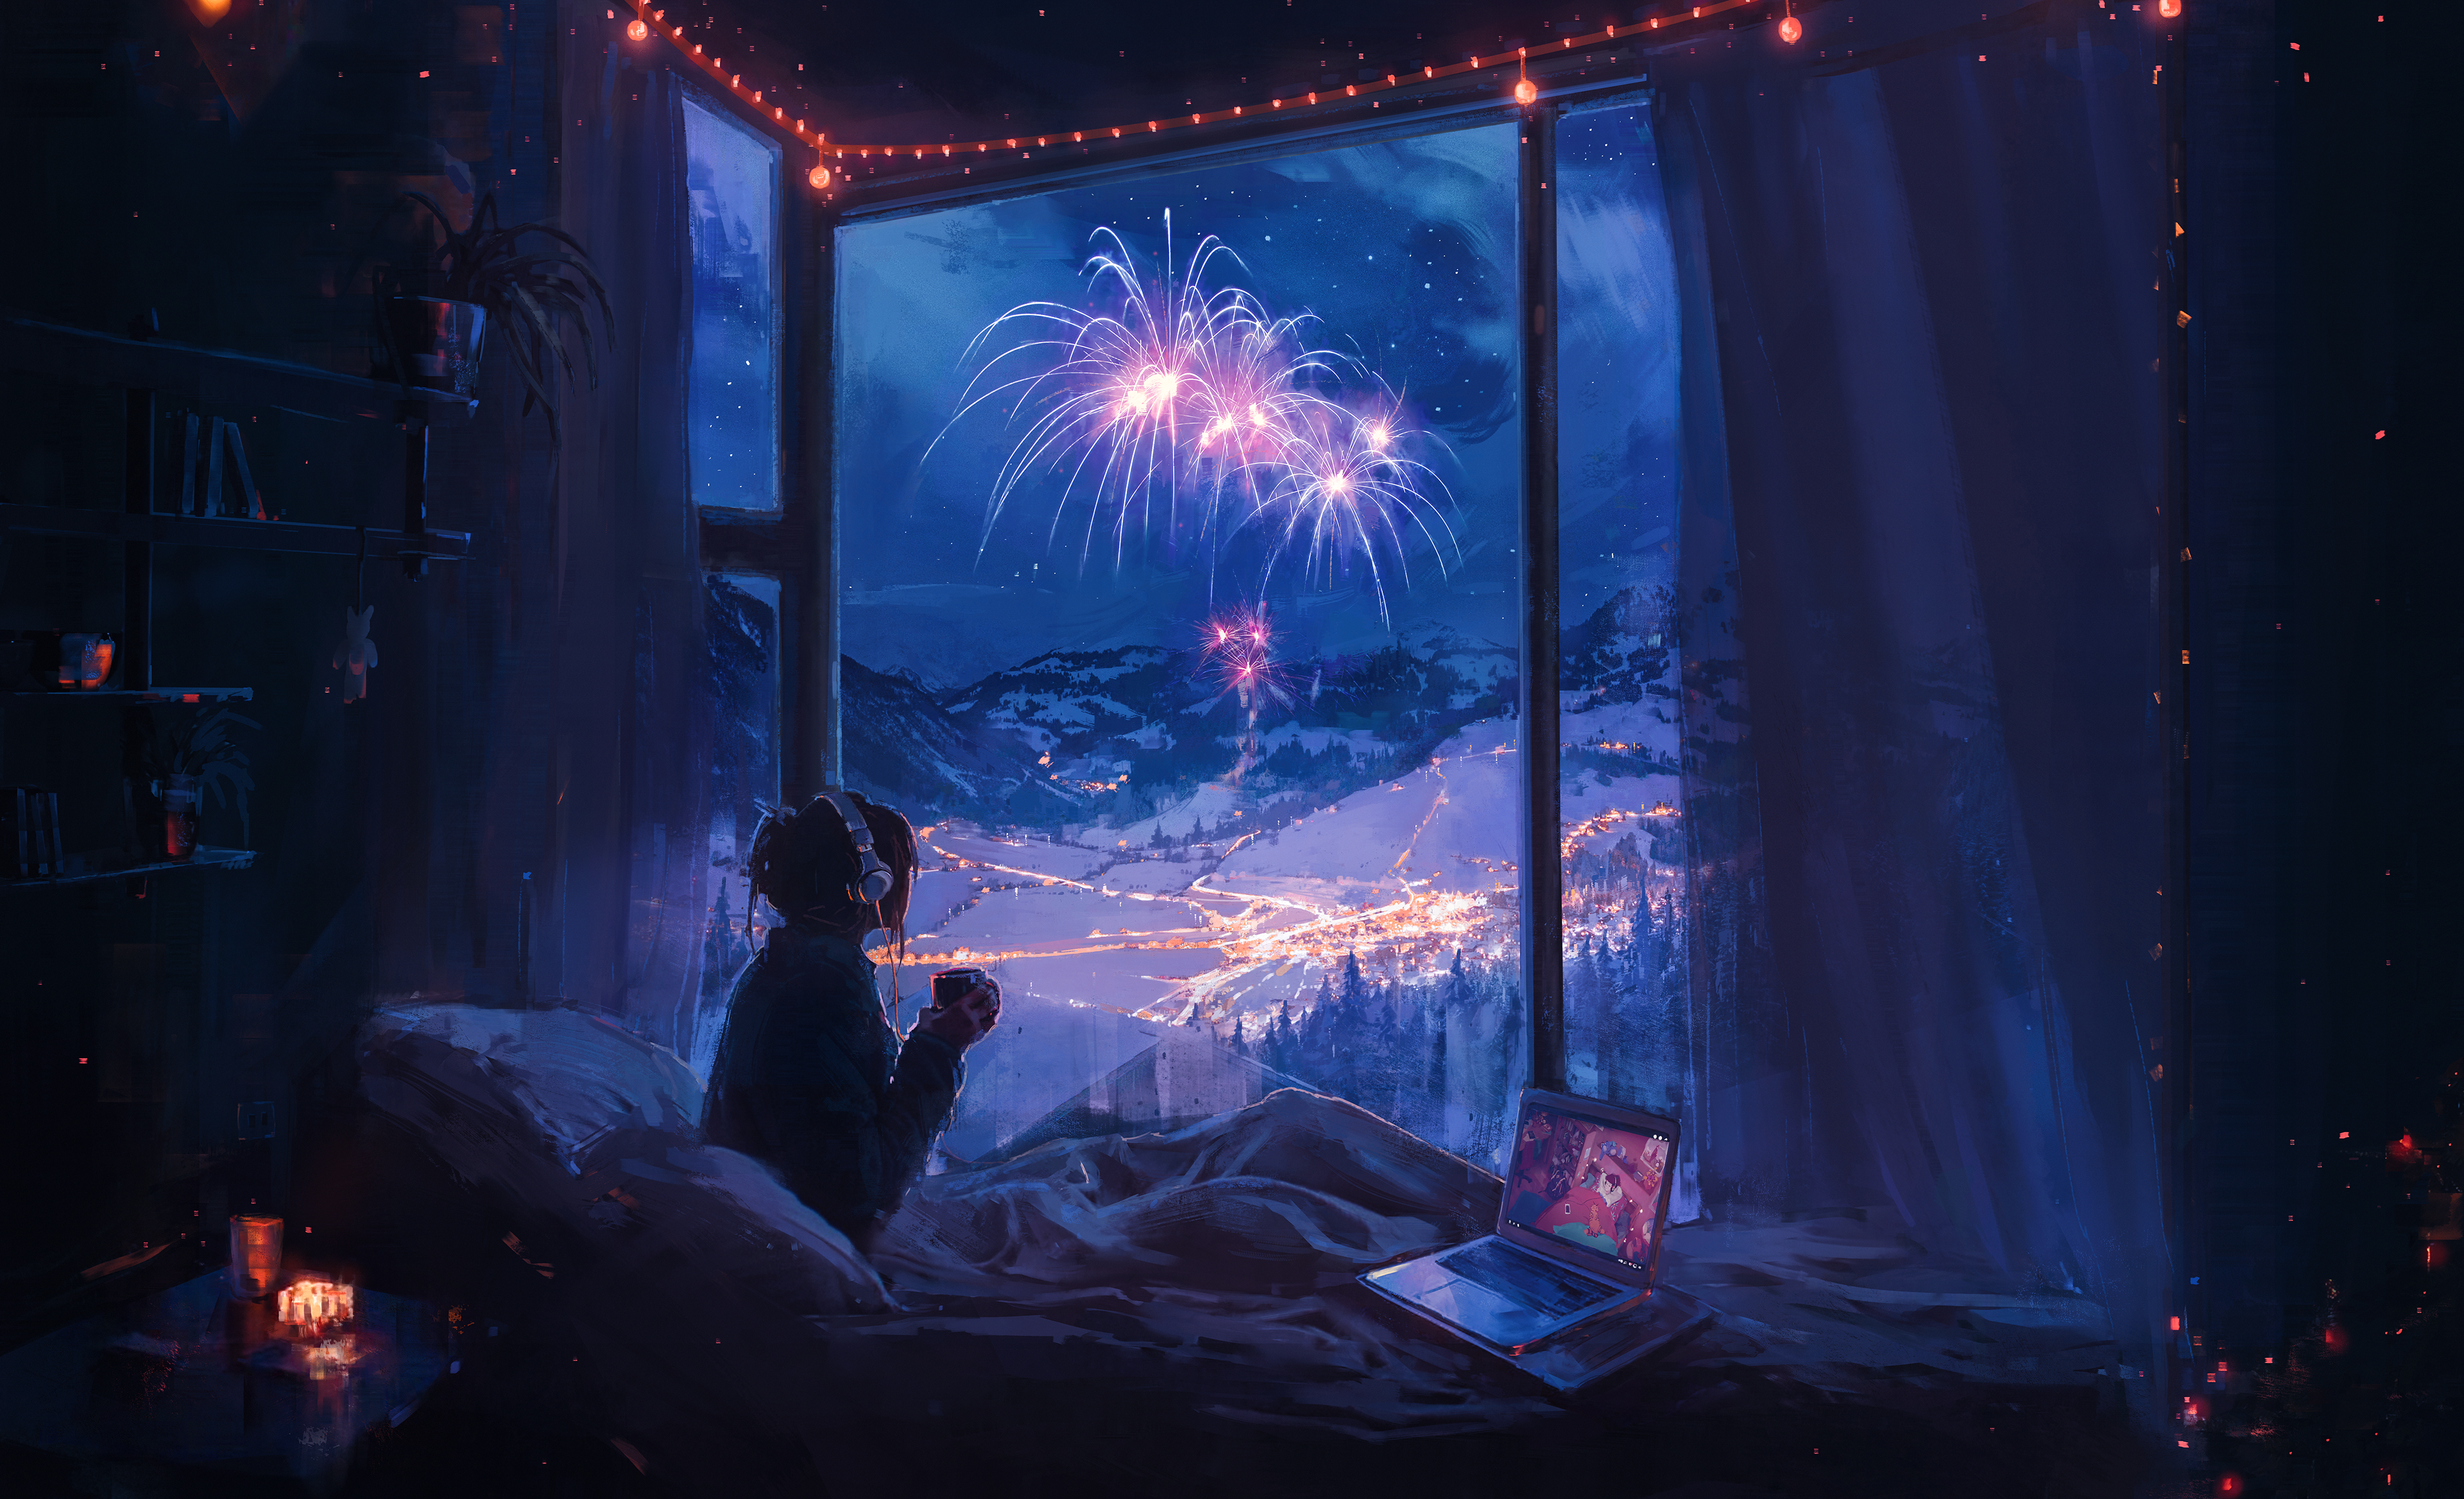 Aenami Digital Art Artwork Illustration Painting Room Indoors Women Window Fireworks Night Stars Mou 3840x2336